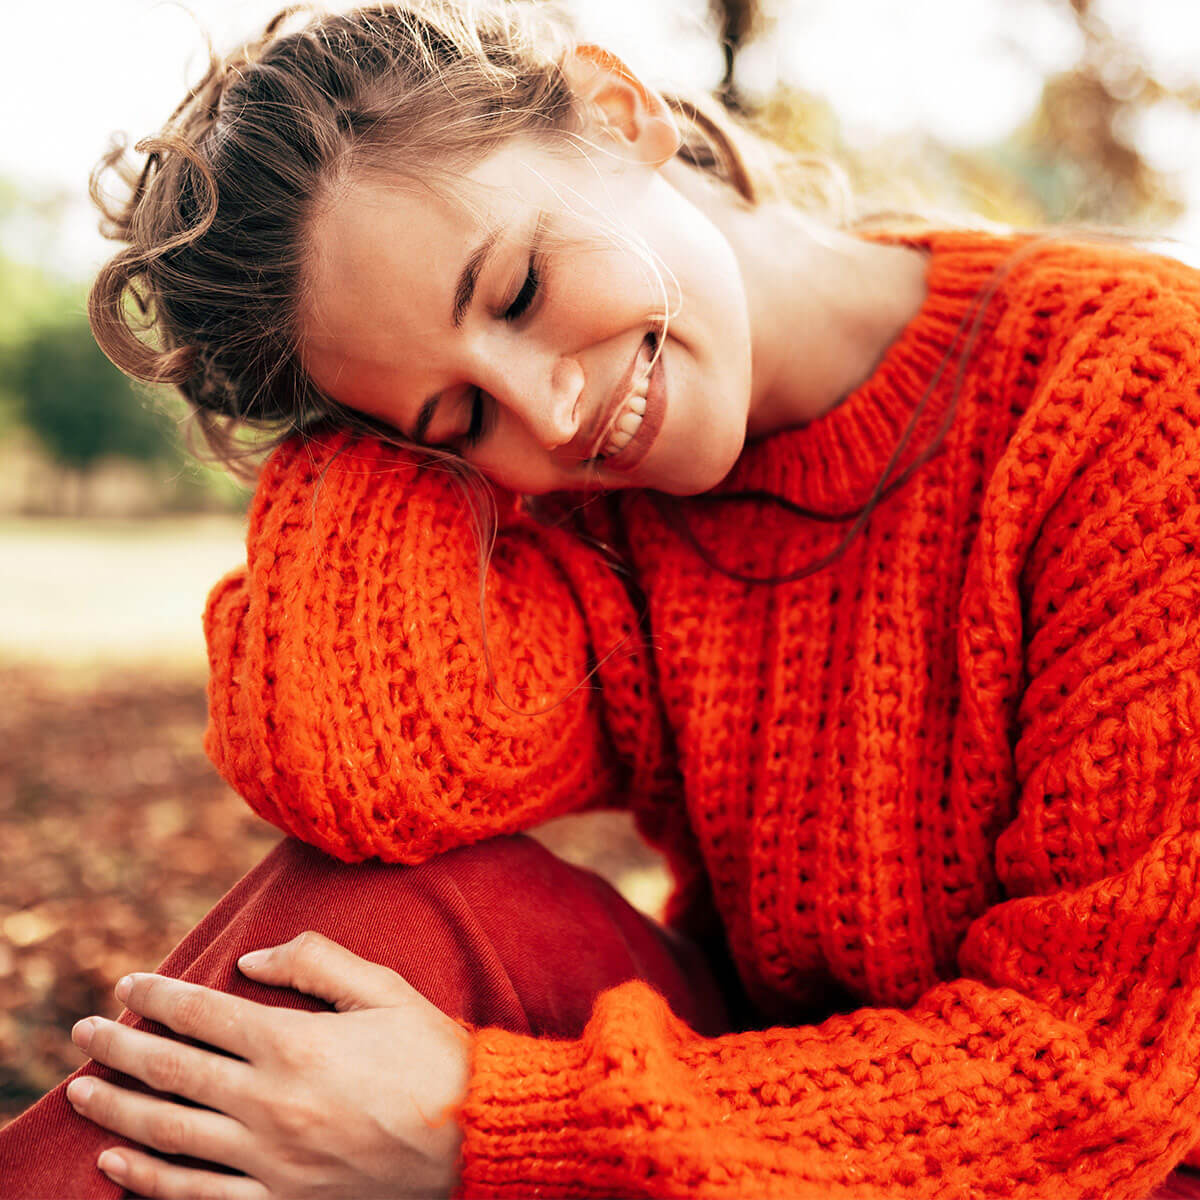 GRAPEFRUIT-KERN-EXTRAKT + Vitamin C 1200 BIO - 50 ml:   Lächelnde Frau sitzt auf einer Wiese